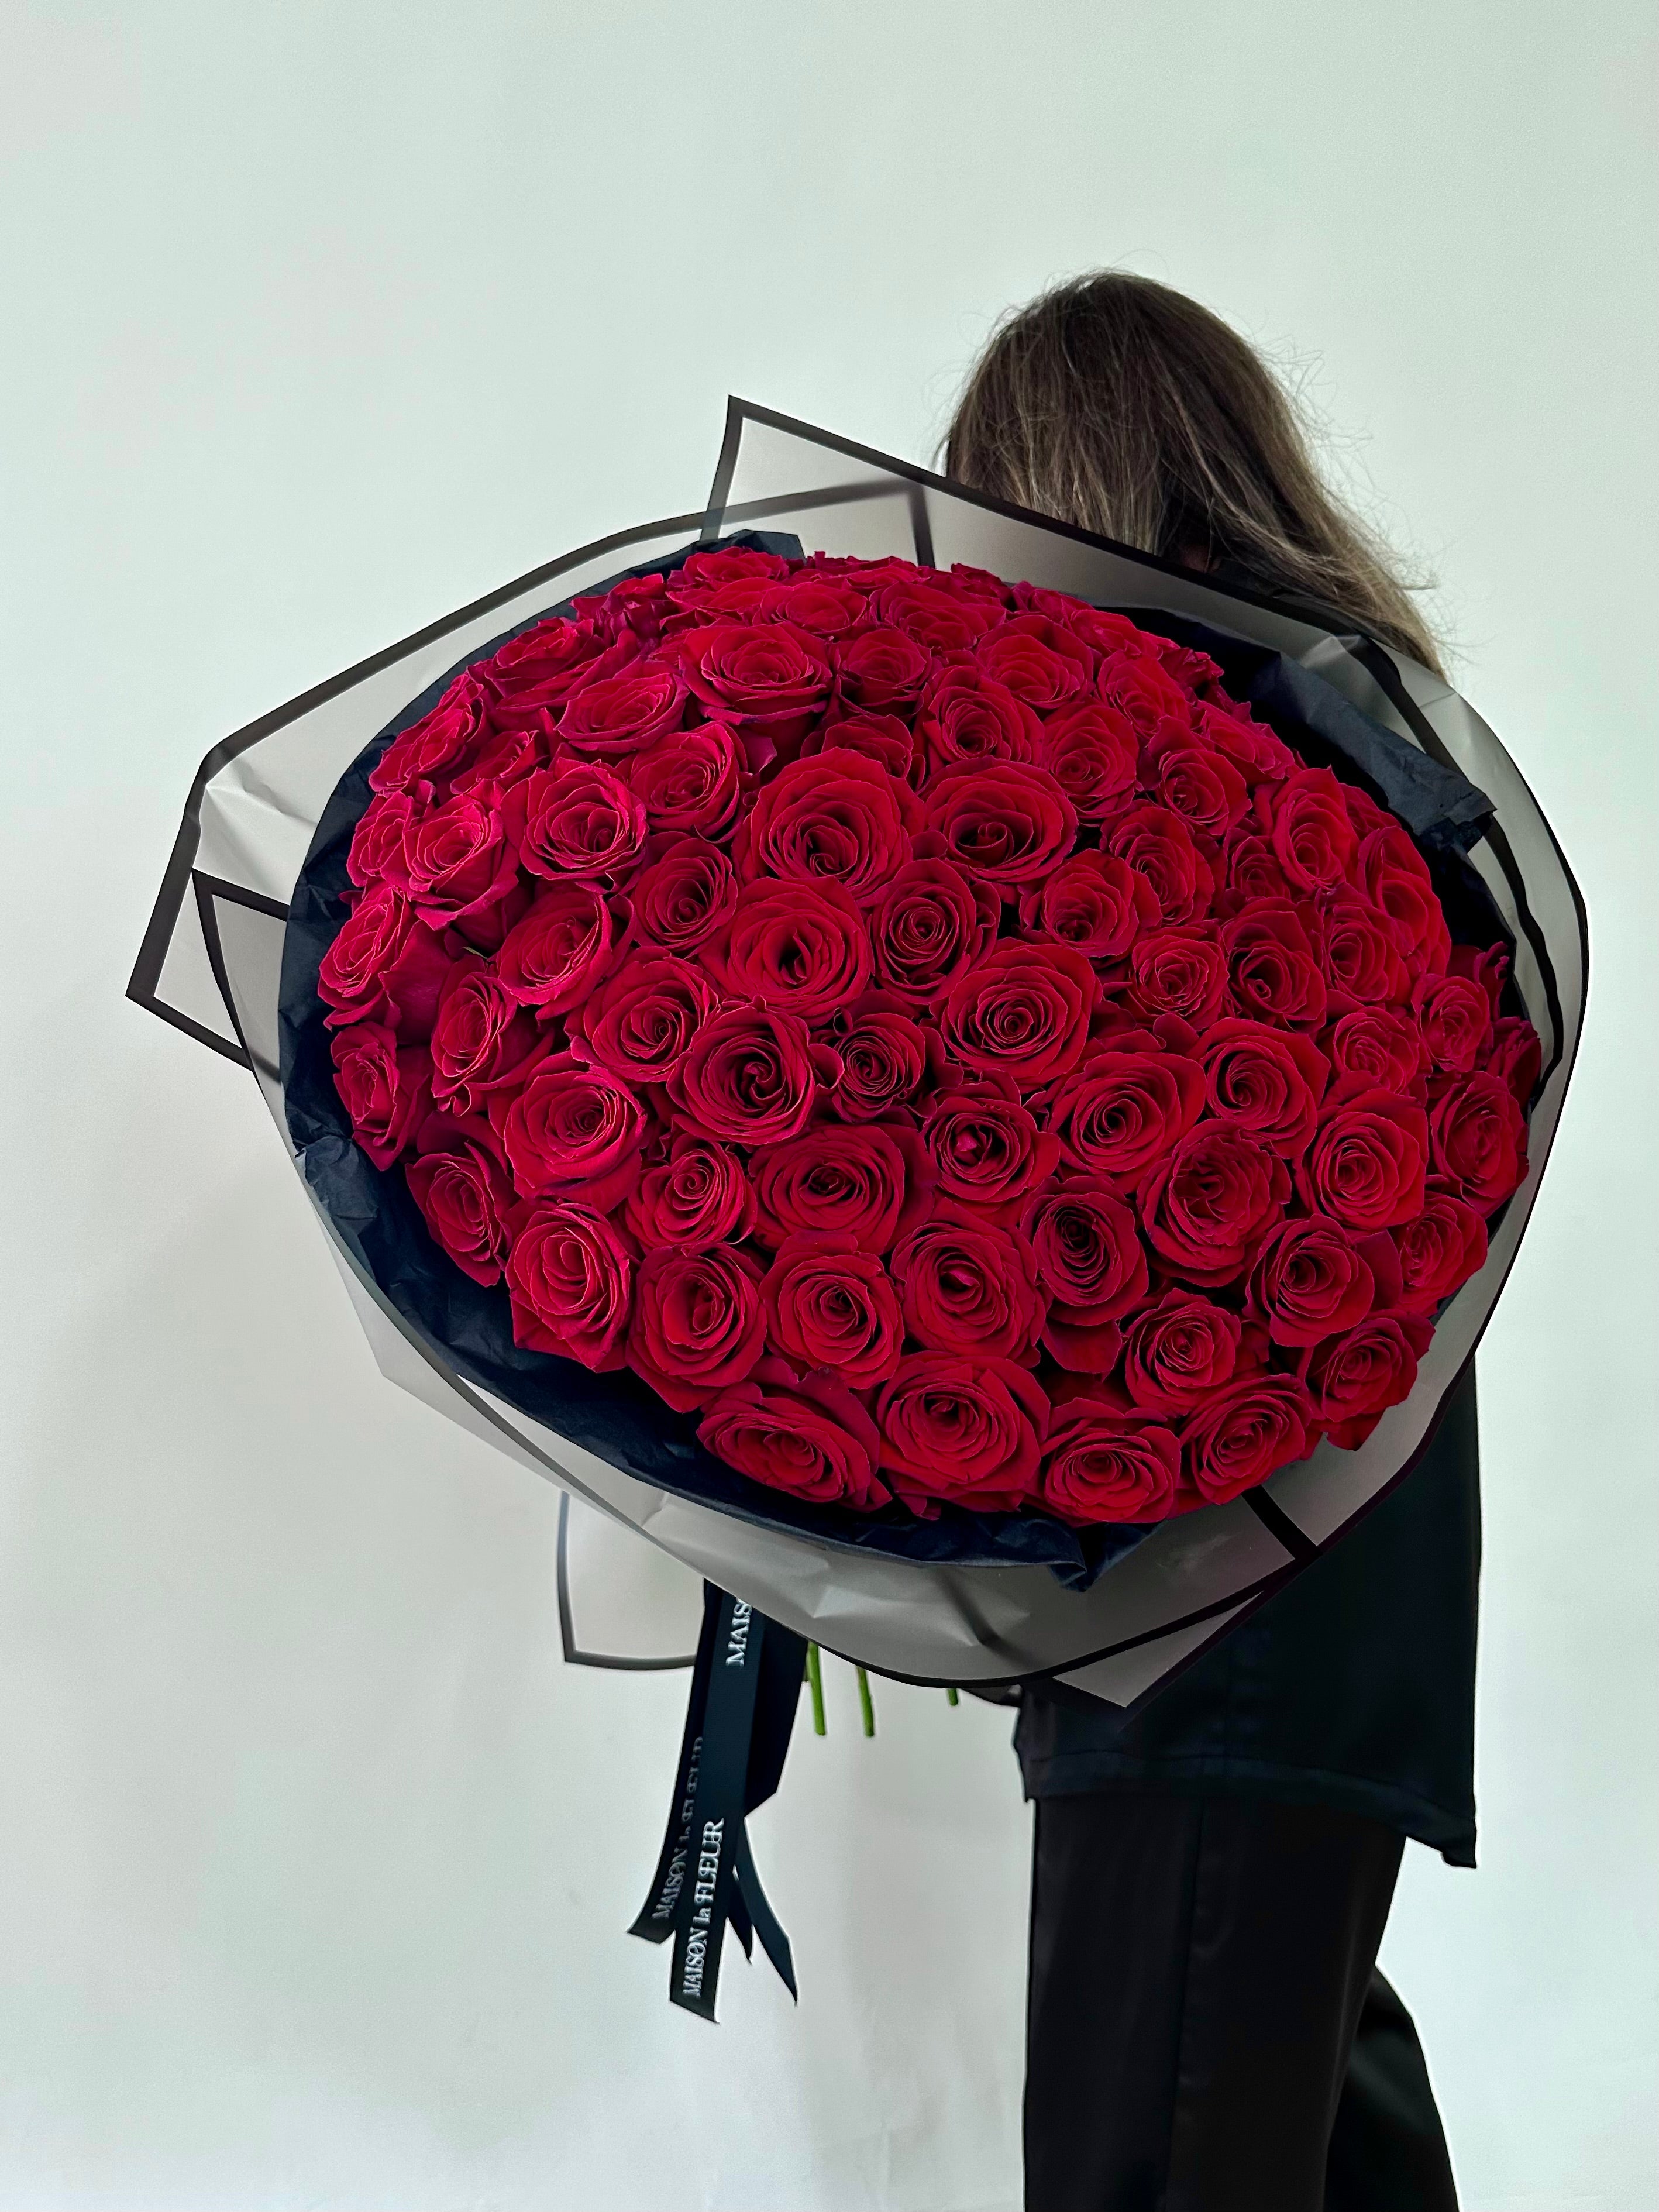 Passionate Affair - 200 beautiful red premium roses